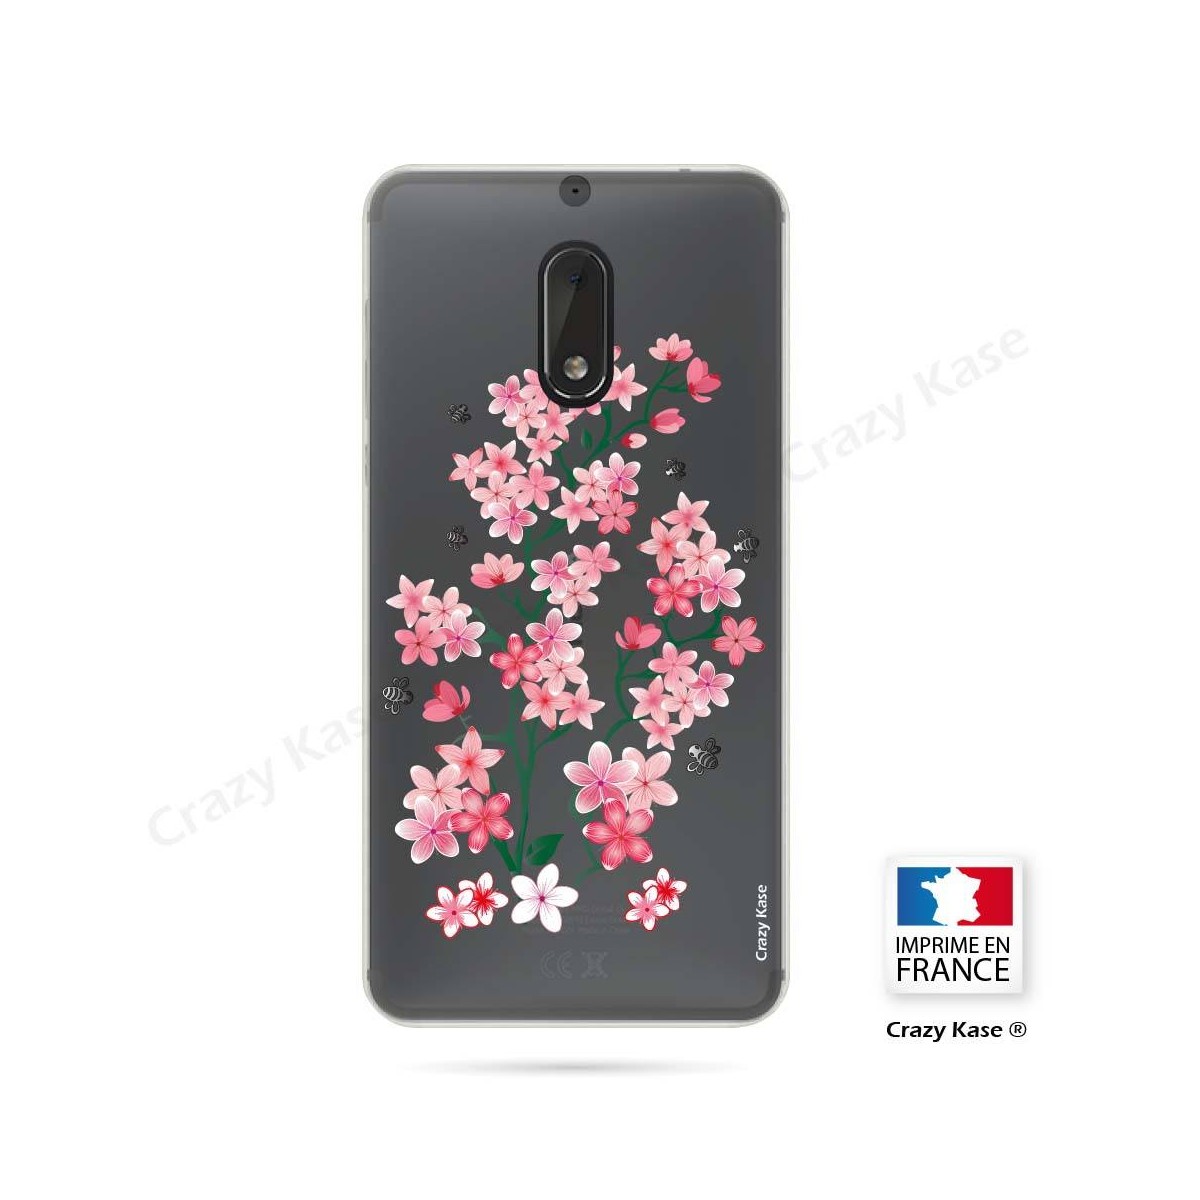 Coque Nokia 6 souple motif Fleurs de Sakura - Crazy Kase